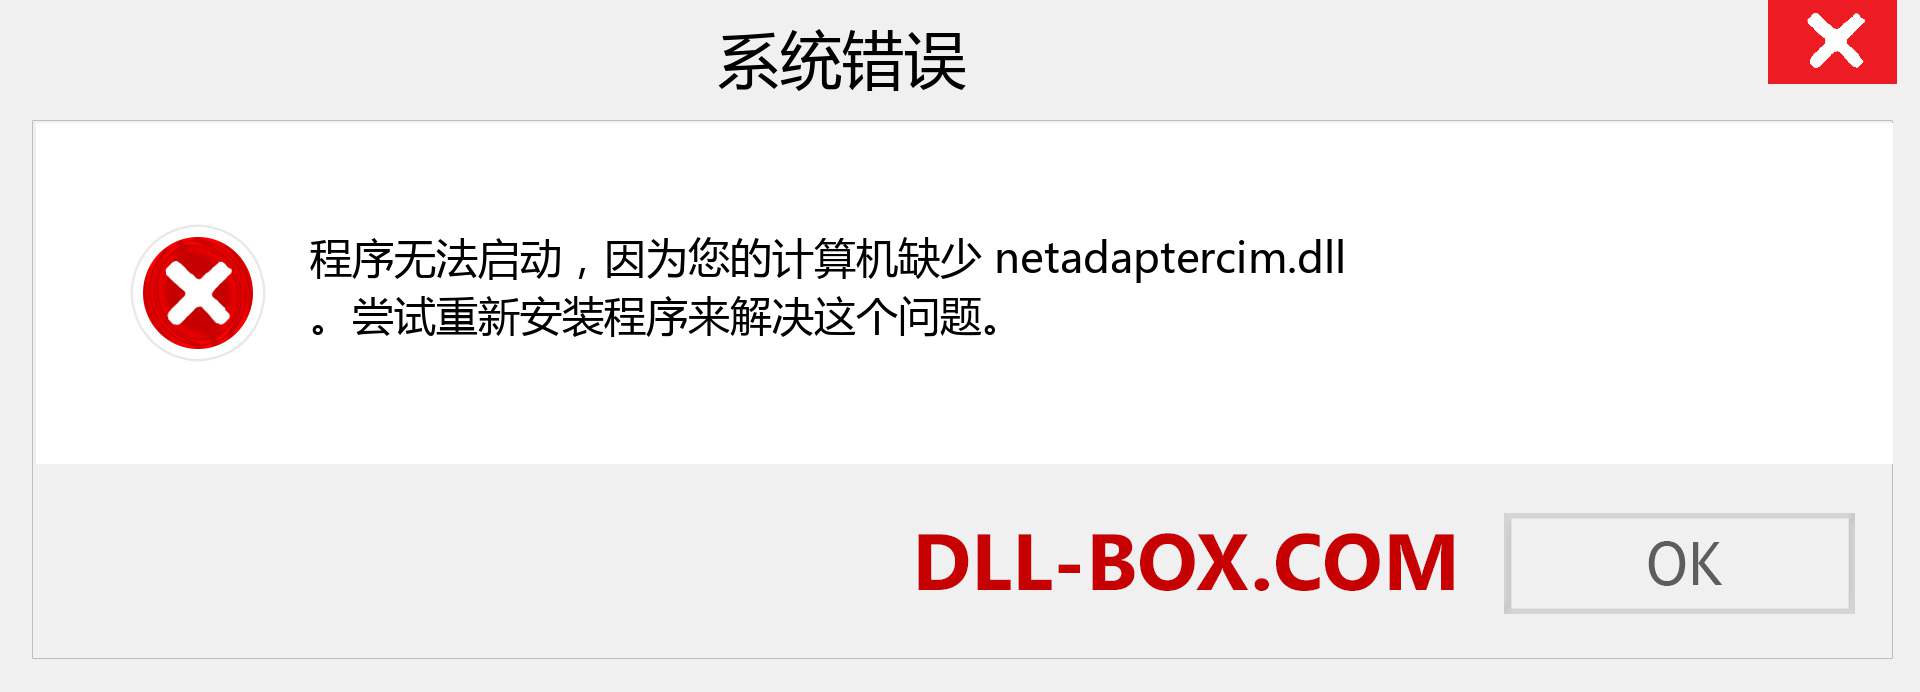 netadaptercim.dll 文件丢失？。 适用于 Windows 7、8、10 的下载 - 修复 Windows、照片、图像上的 netadaptercim dll 丢失错误